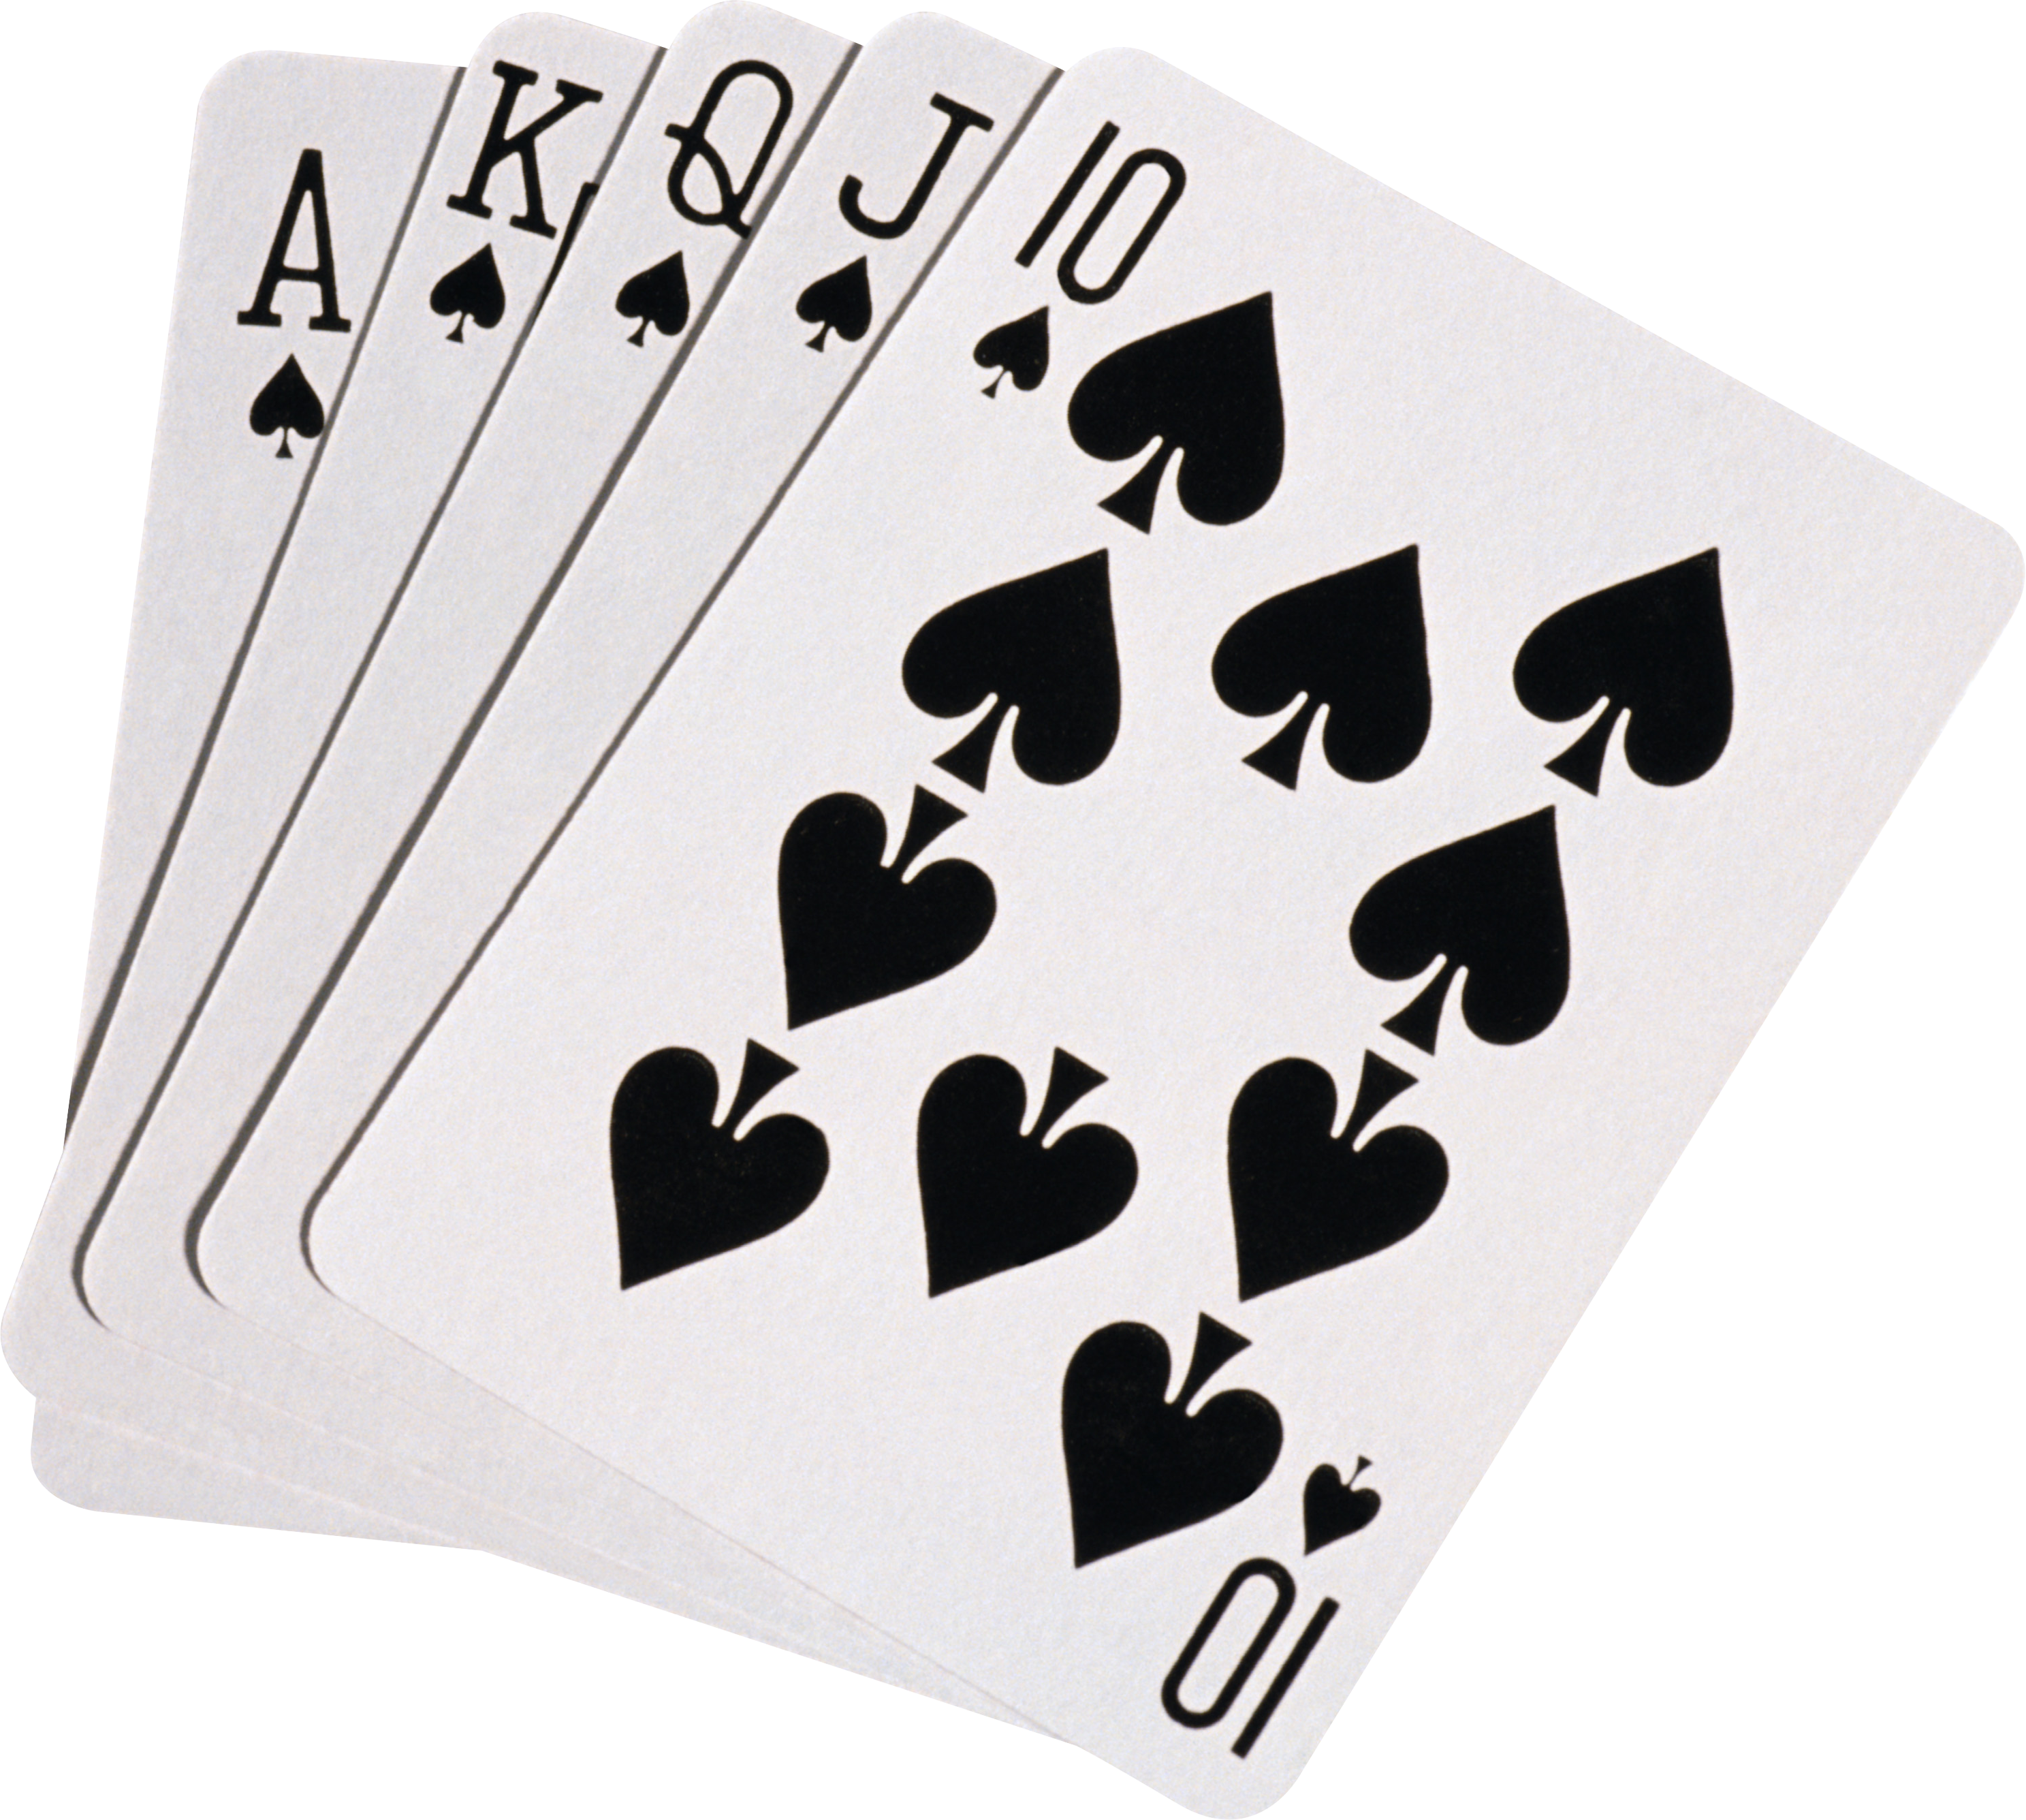 Giocando a carte